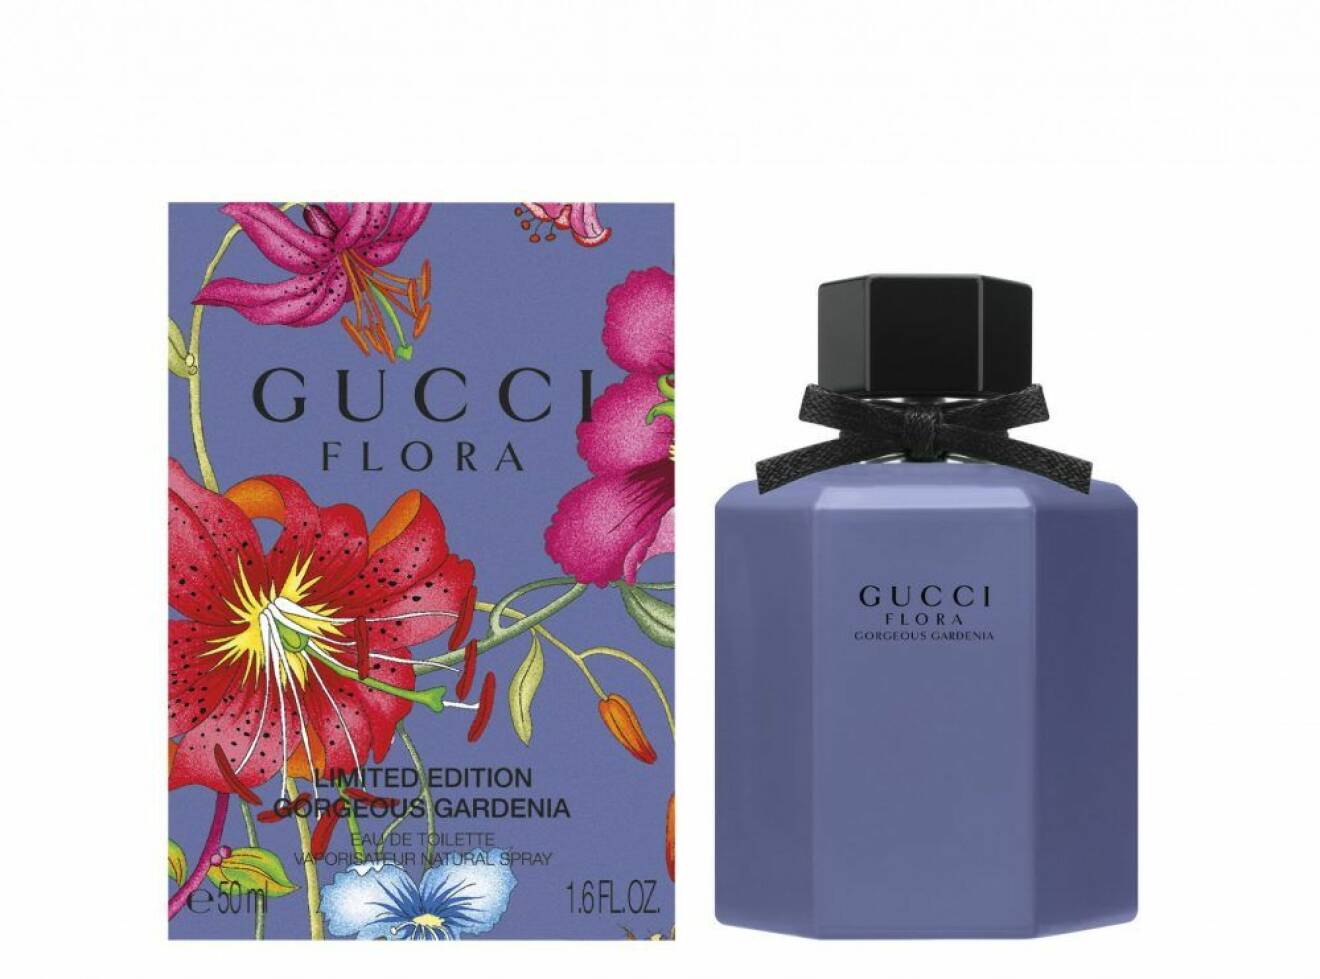 Gucci Flora Gorgeous gardenia